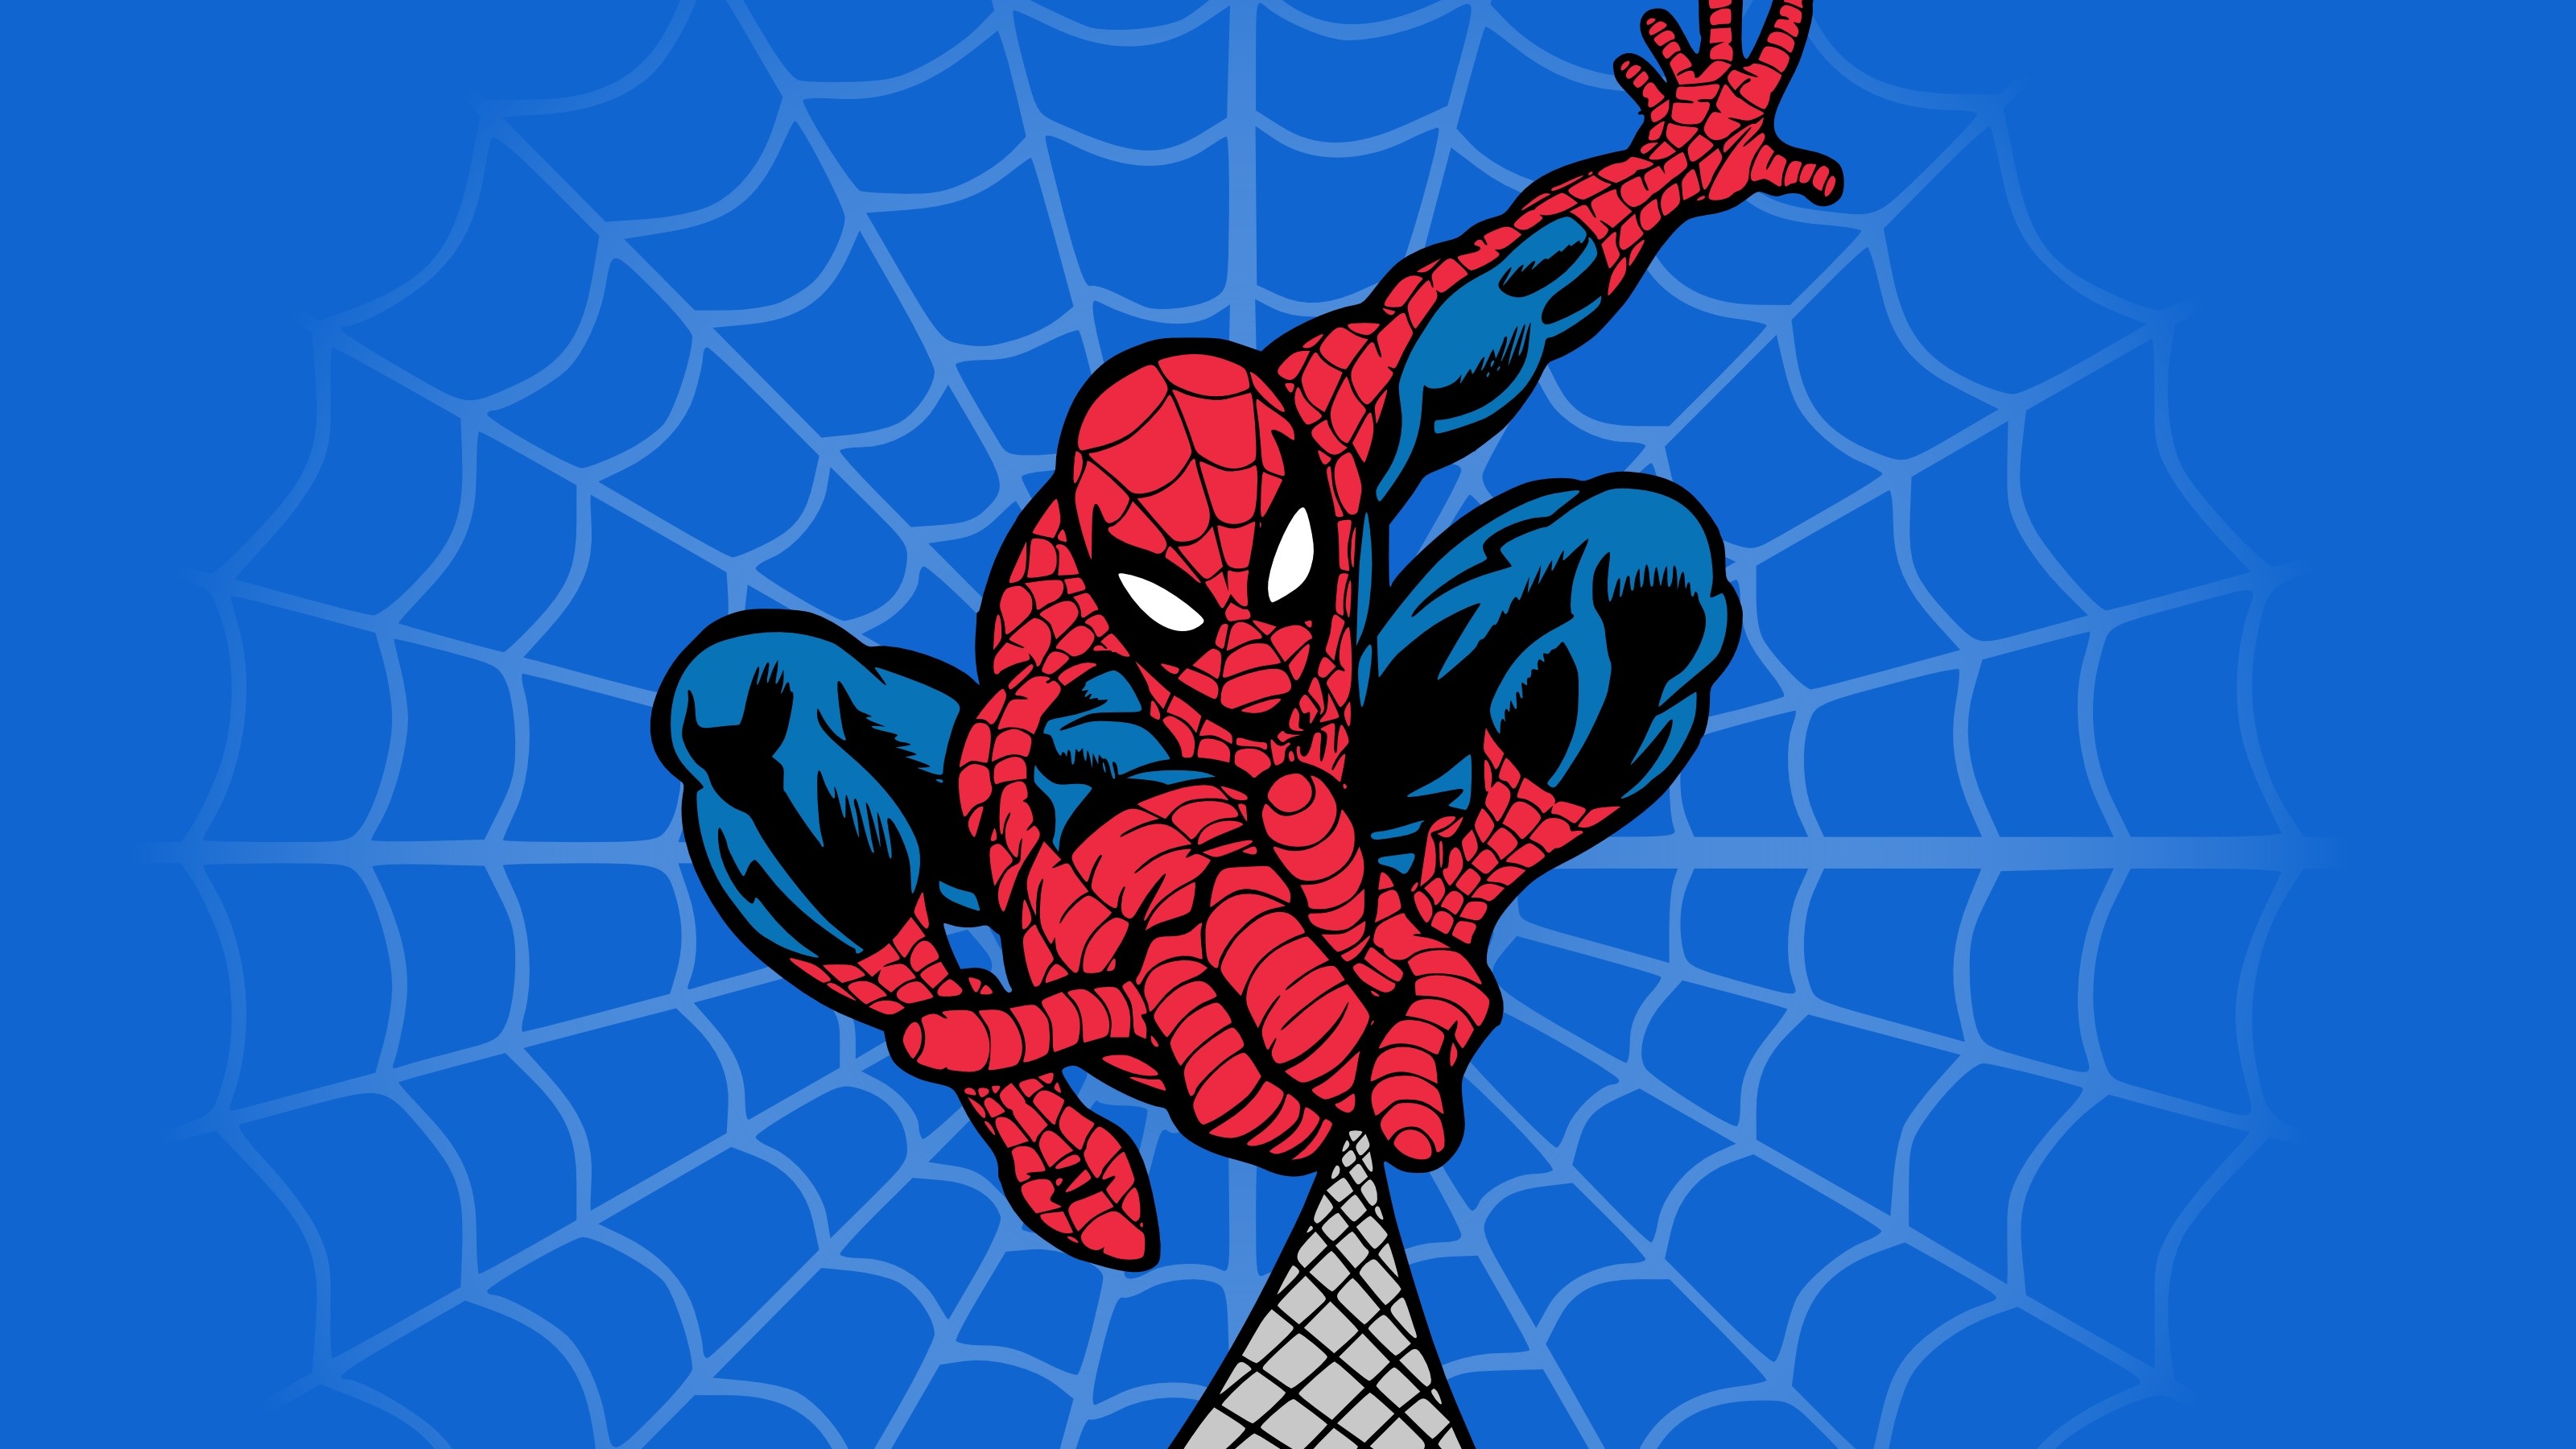 3200x1800 Spiderman en comics hd  - imagenes - wallpapers gratis .